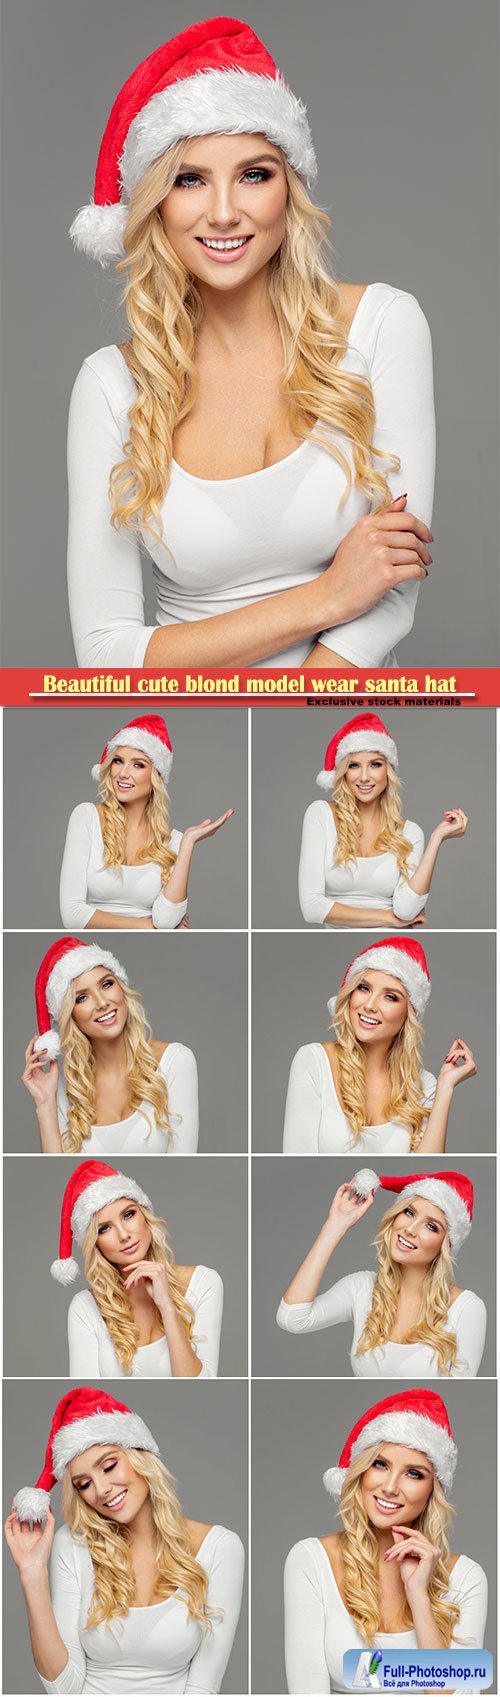 Beautiful cute blond model wear santa hat